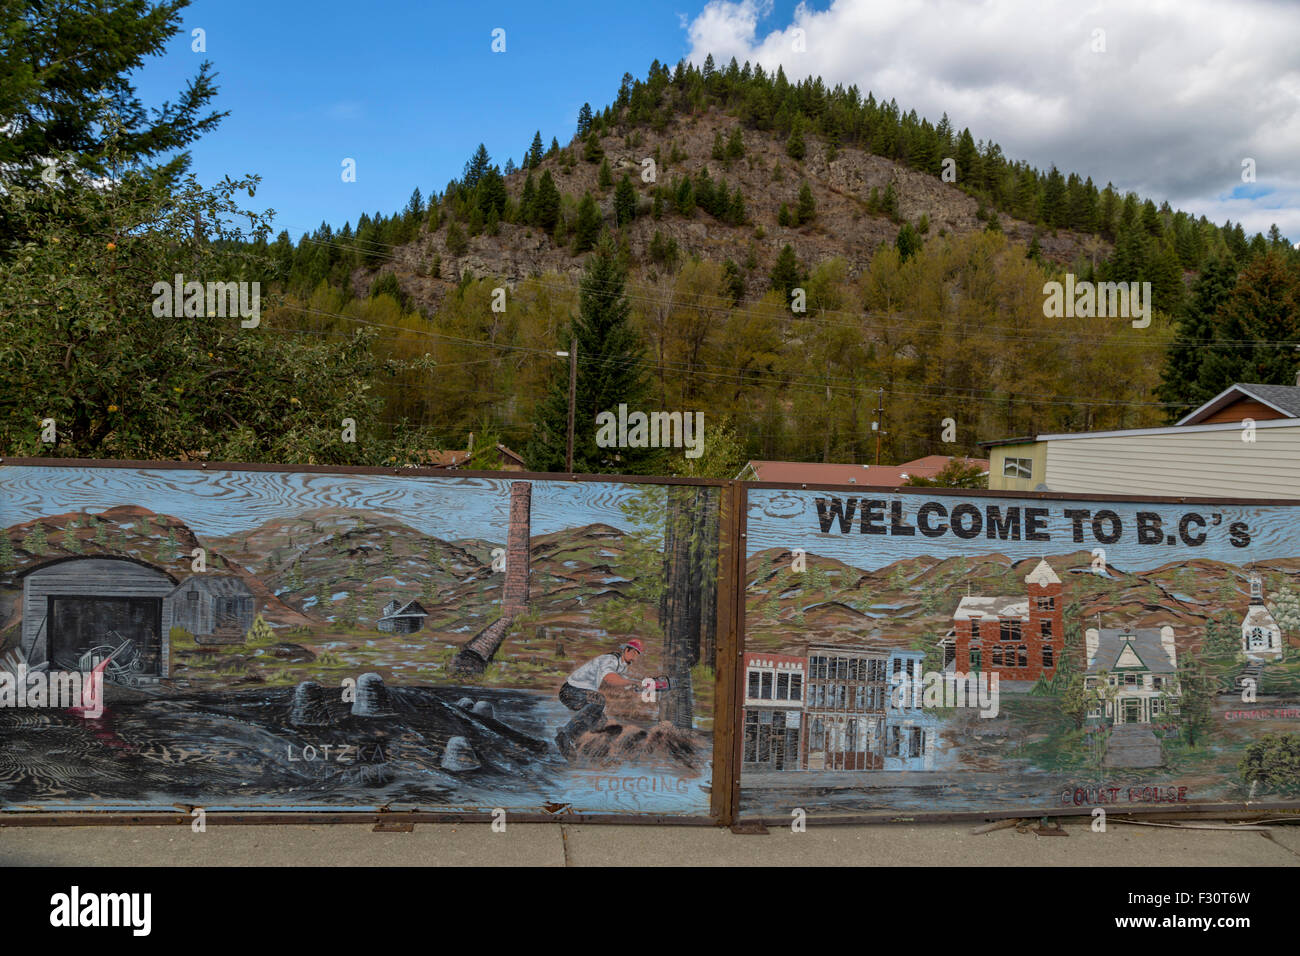 Holzplatten mit historischen Abbildungen des ehemaligen Bergbaus in Greenwood, Britisch-Kolumbien, Kanada, Nordamerika. Stockfoto